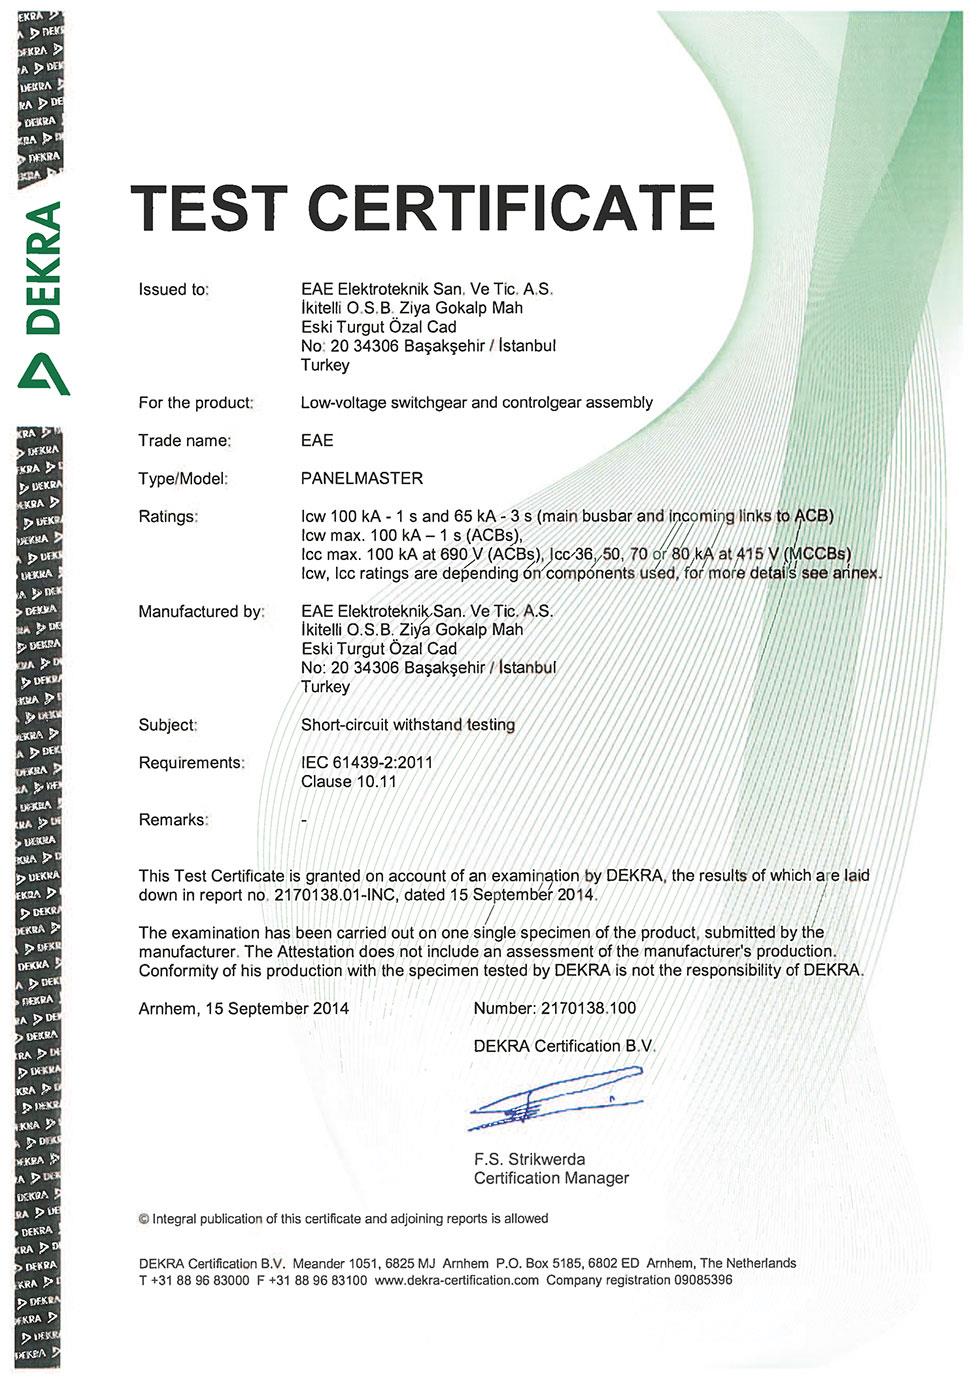 PanelMaster IEC 61439 Type Test Certificate (Schneider - GE - Eaton)